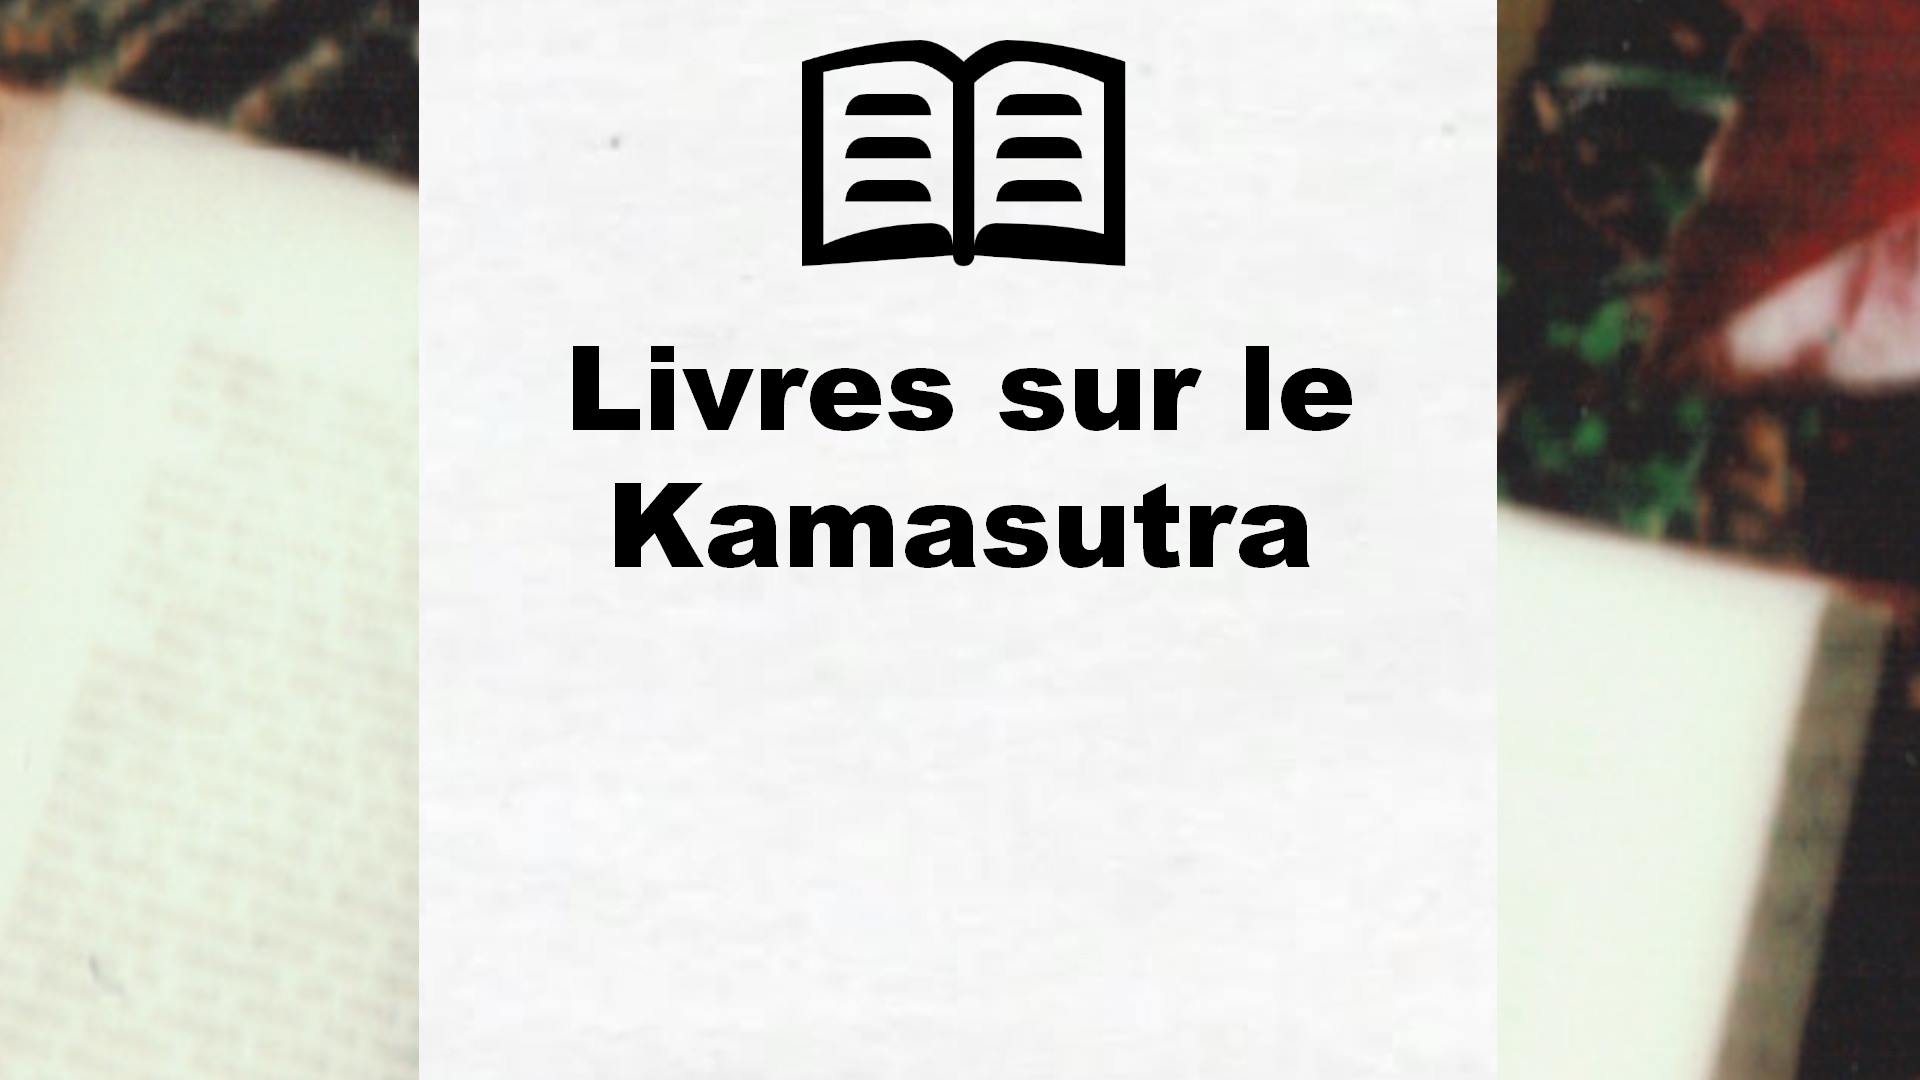 Livres sur le Kamasutra